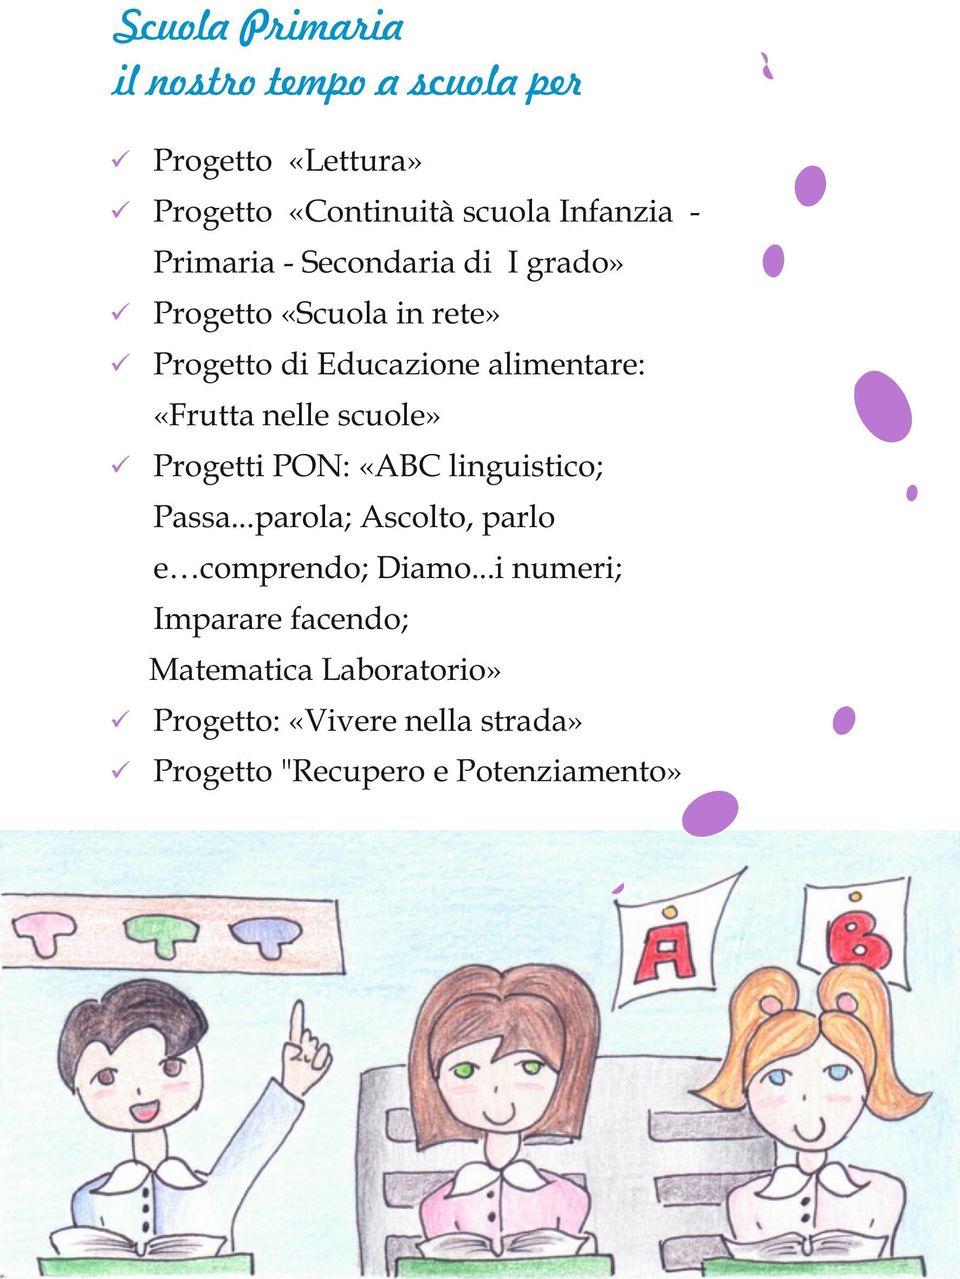 nelle scuole» Progetti PON: «ABC linguistico; Passa...parola; Ascolto, parlo e comprendo; Diamo.